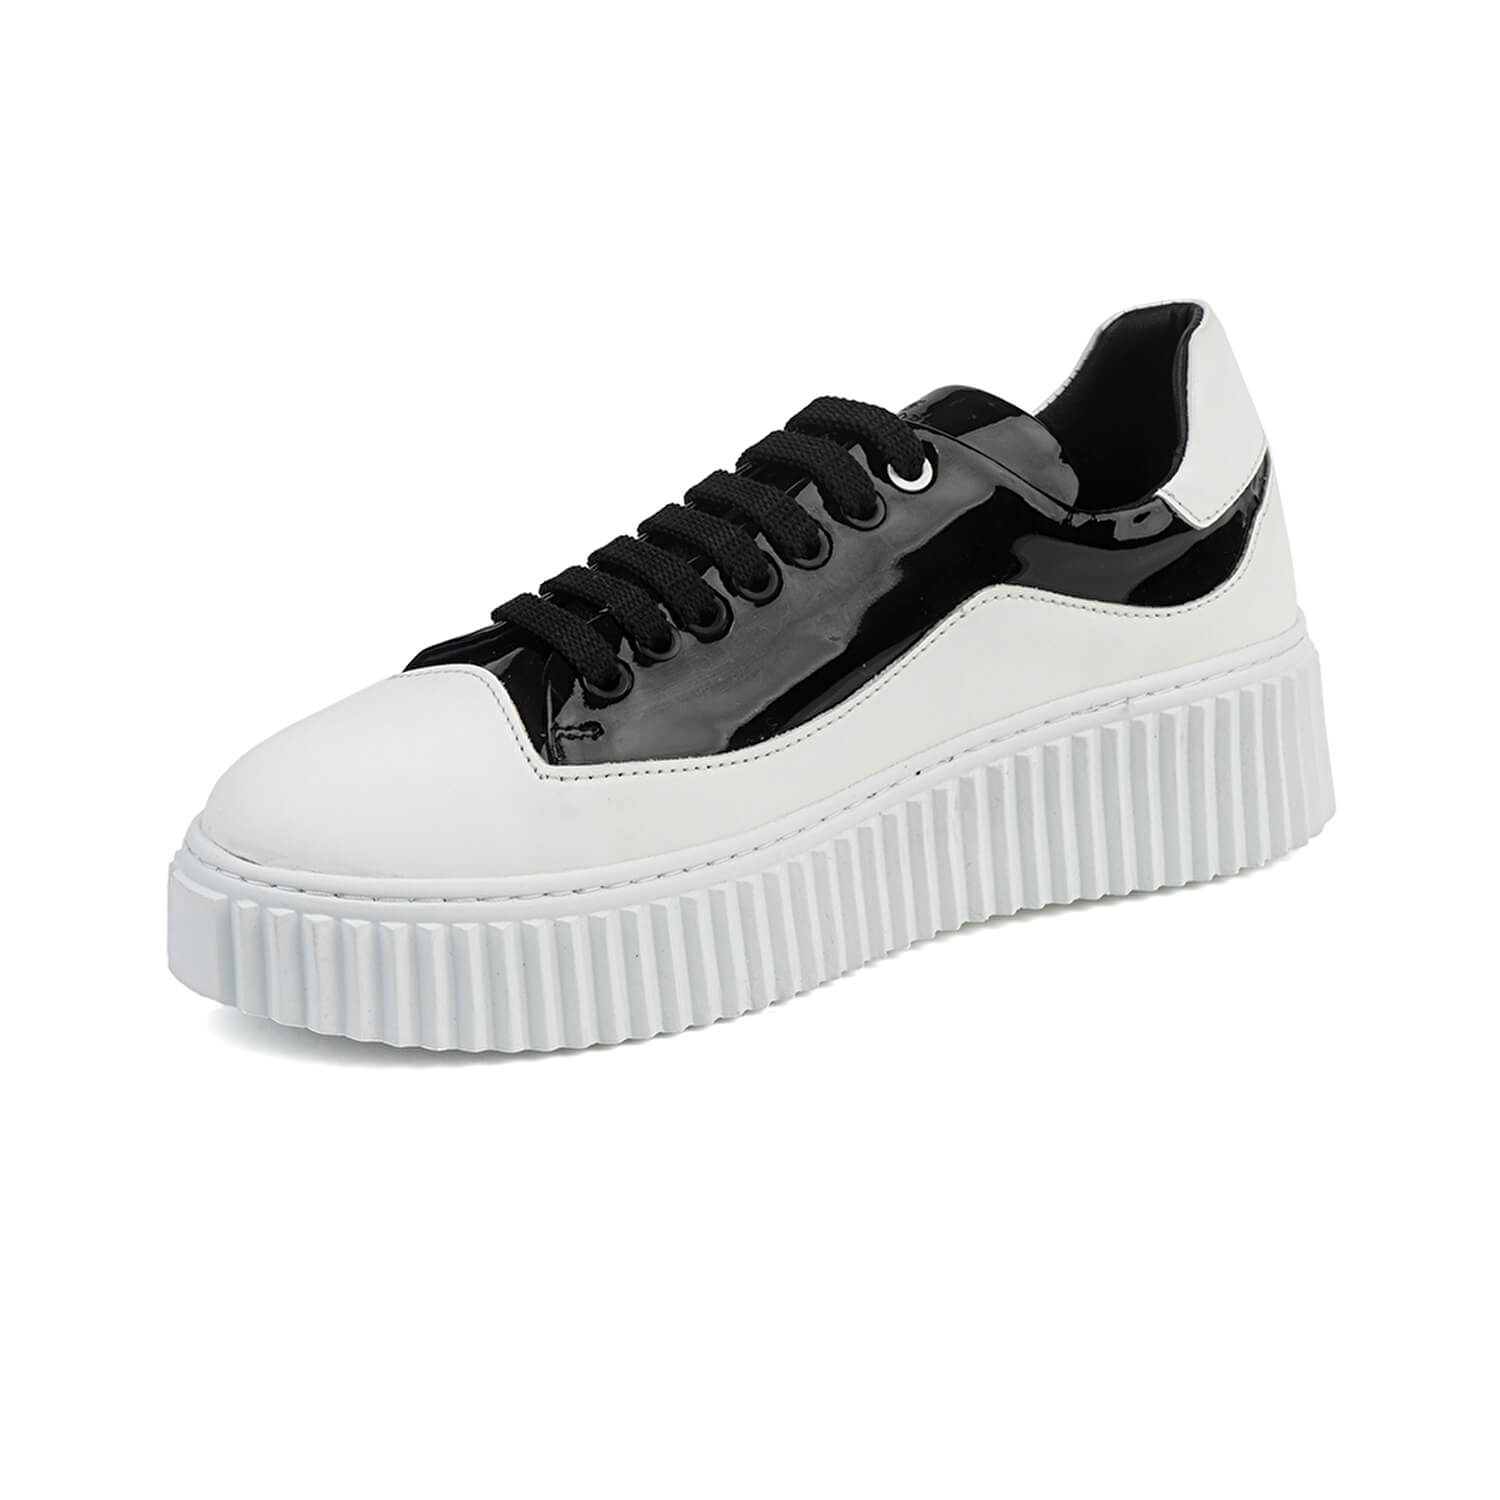 Kadın Siyah Beyaz Sneaker Ayakkabı 1K2SA30923-3